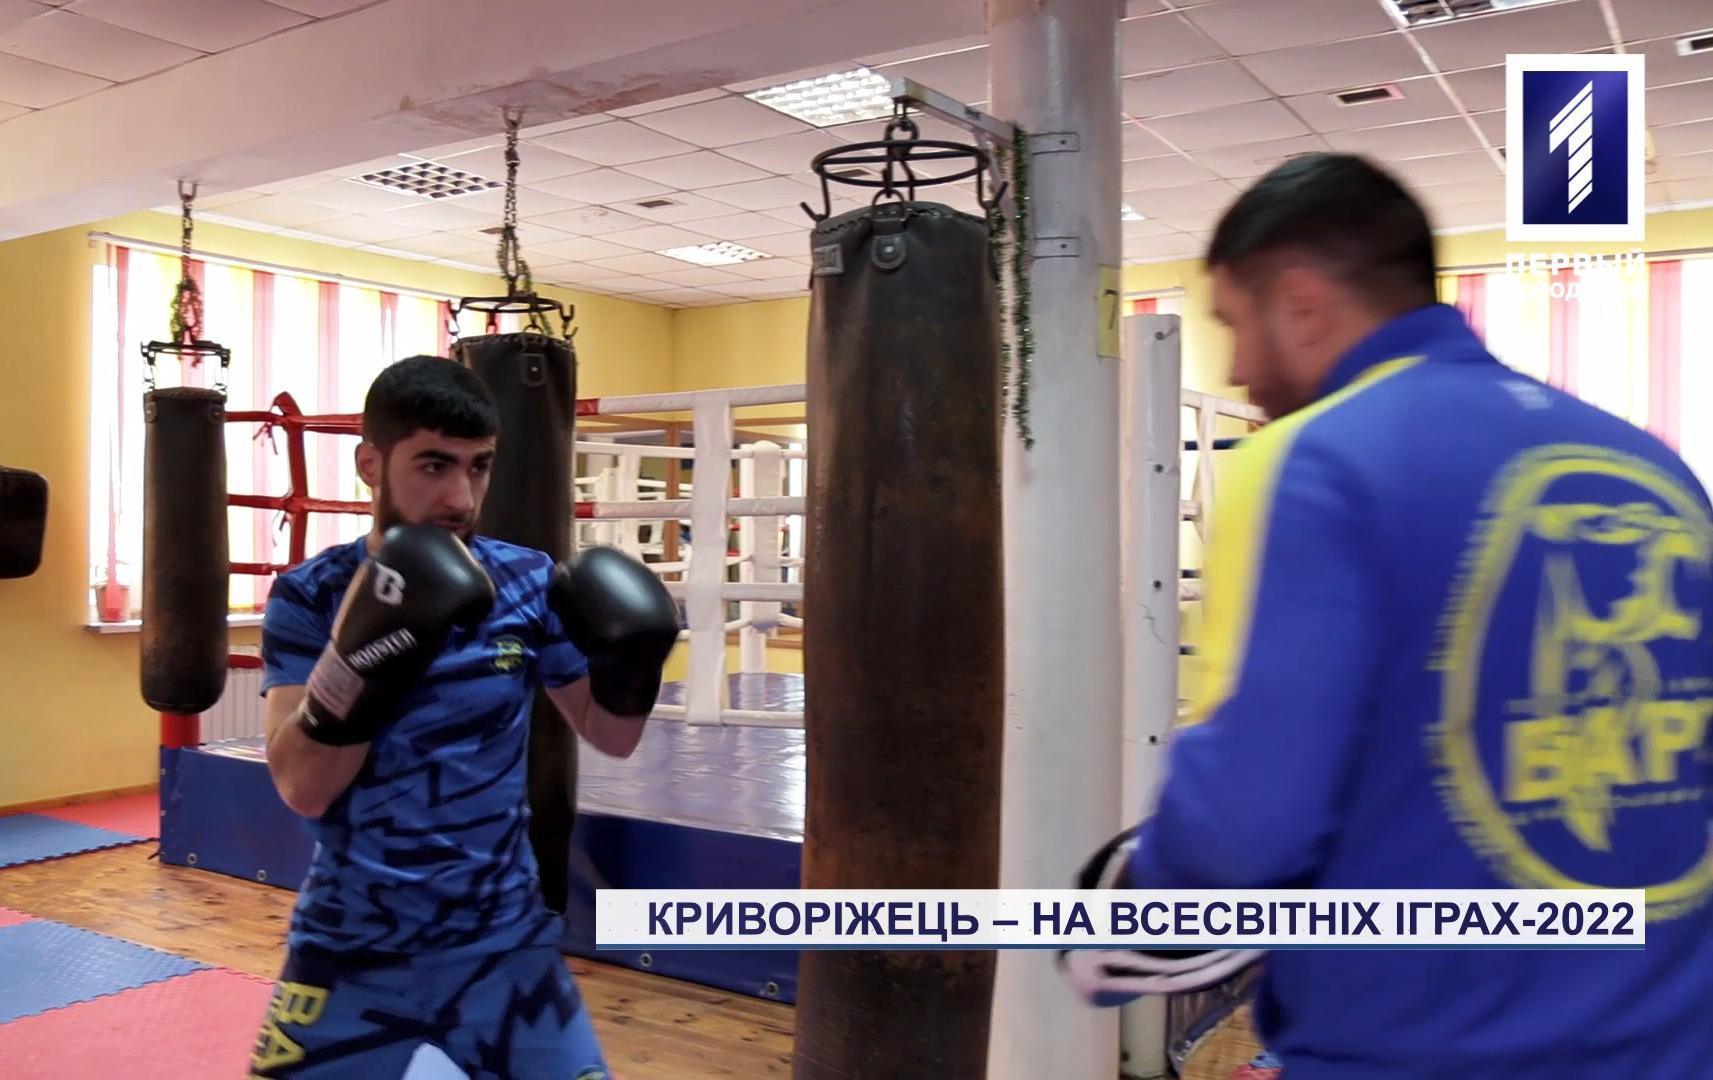 Кикбоксер из Кривого Рога будет защищать честь Украины на Всемирных Играх - 2022